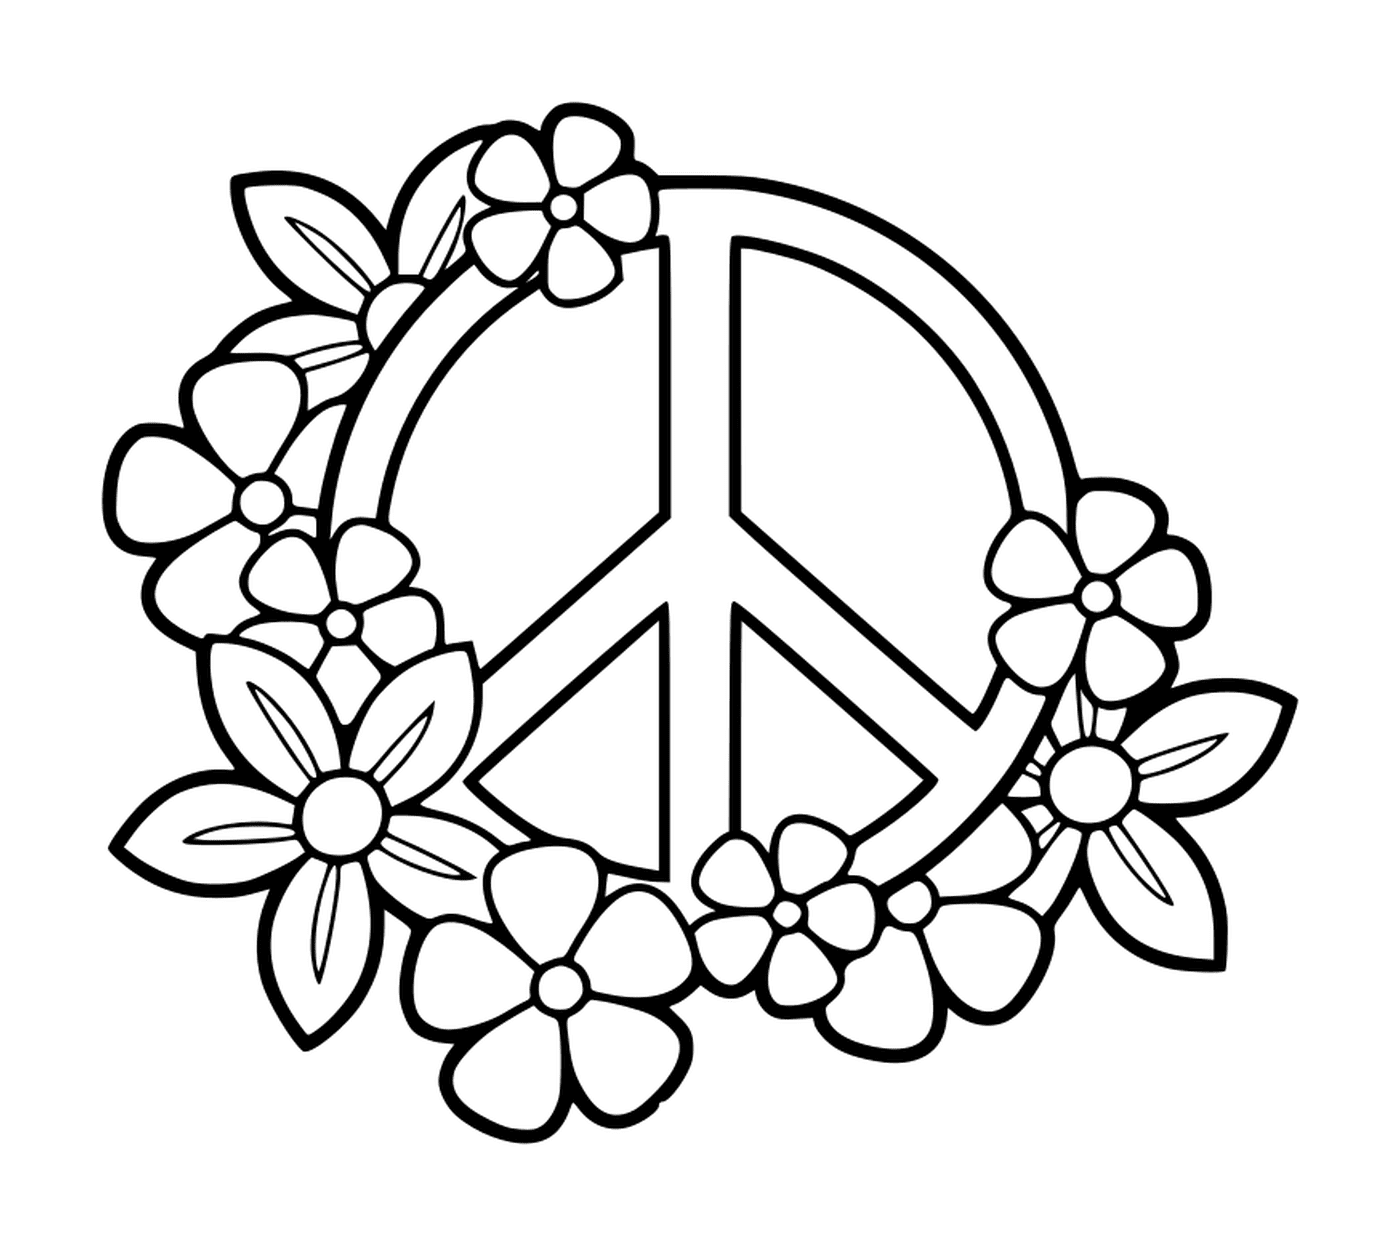  Signo de paz con flores 